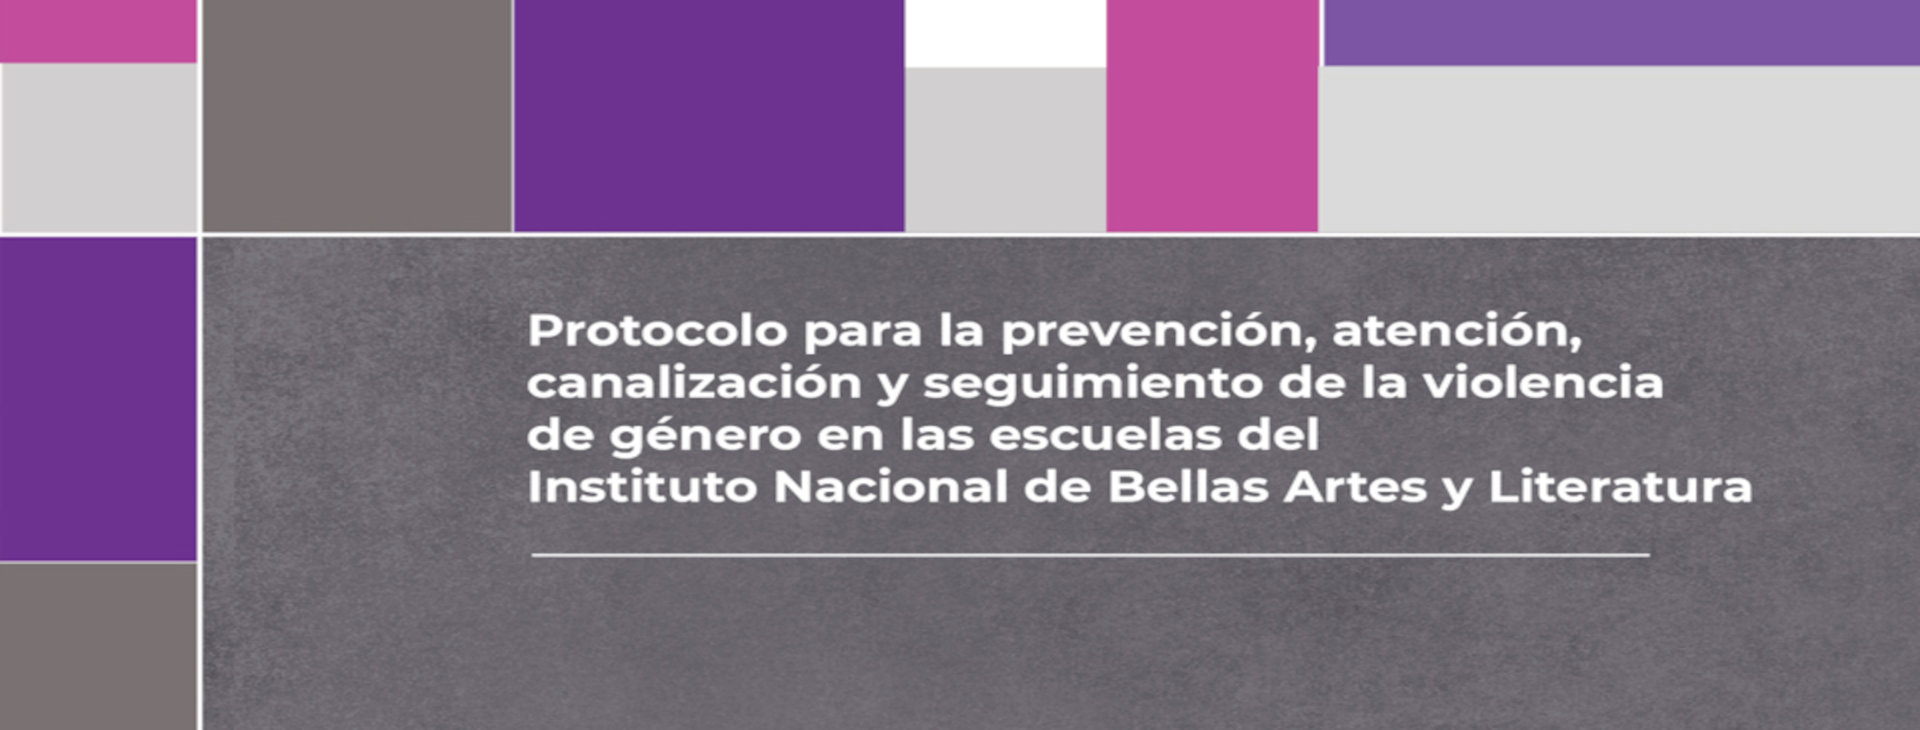 Protocolo para la prevención, atención, canalización y seguimiento de la violencia de género en las escuelas del INBAL